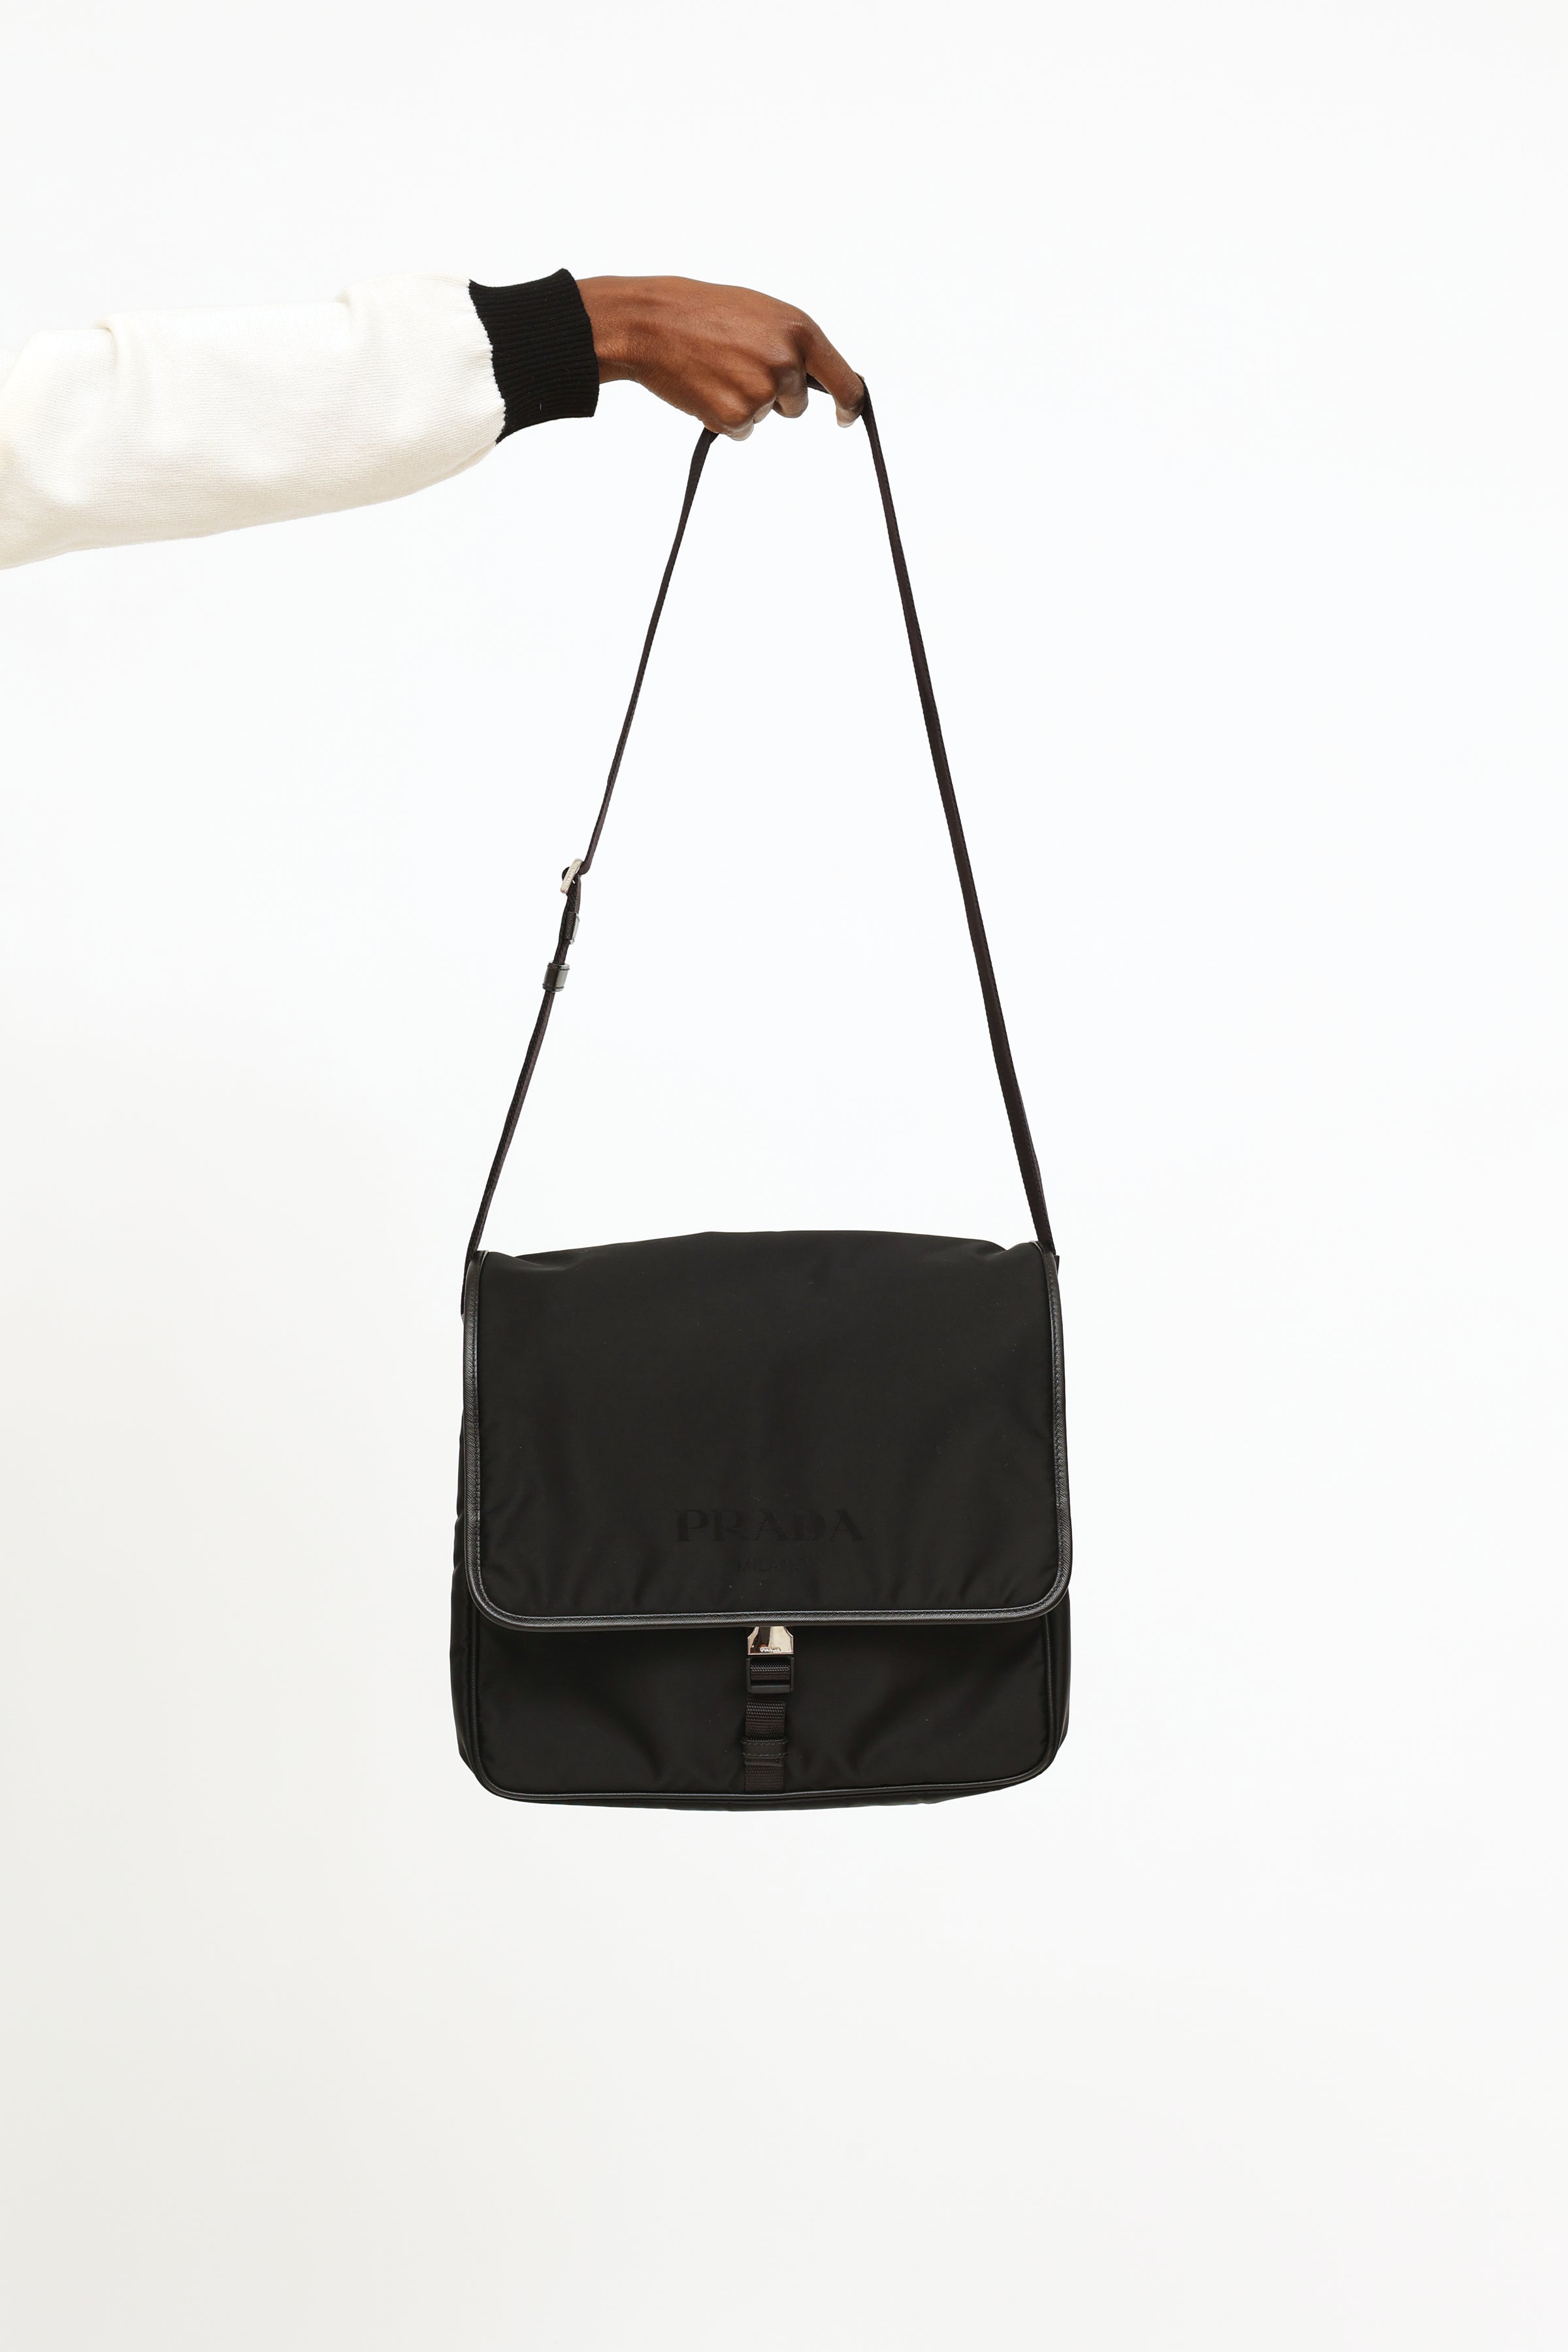 Prada Tessuto Saffiano Black Messenger Bag Cross Body – Queen